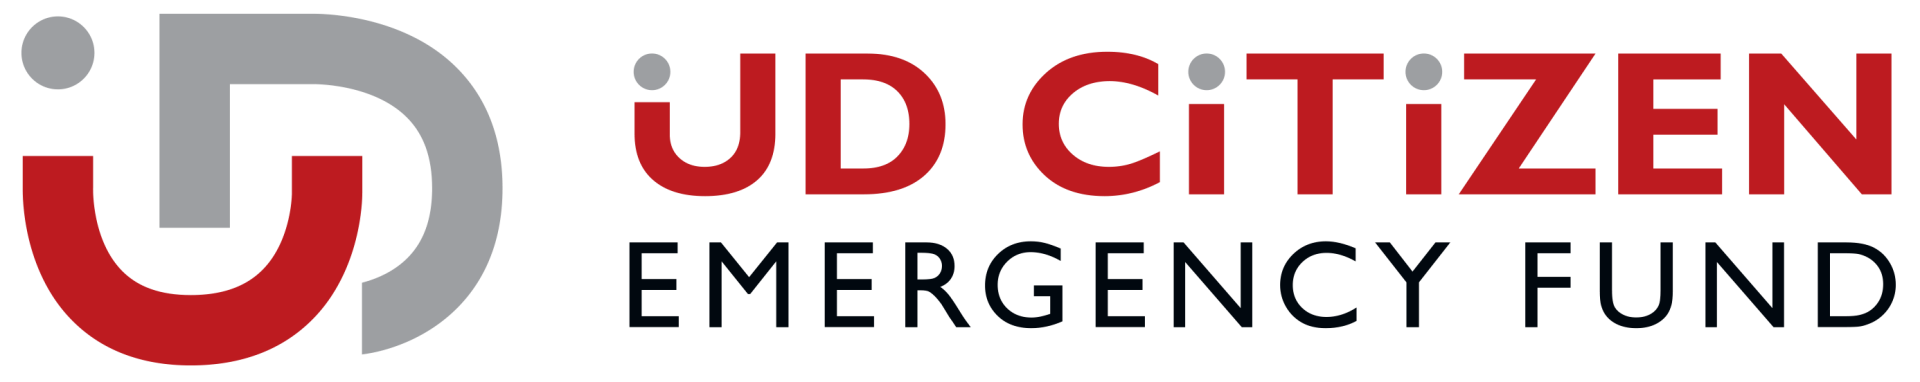 UD Citizen Emergency Fund